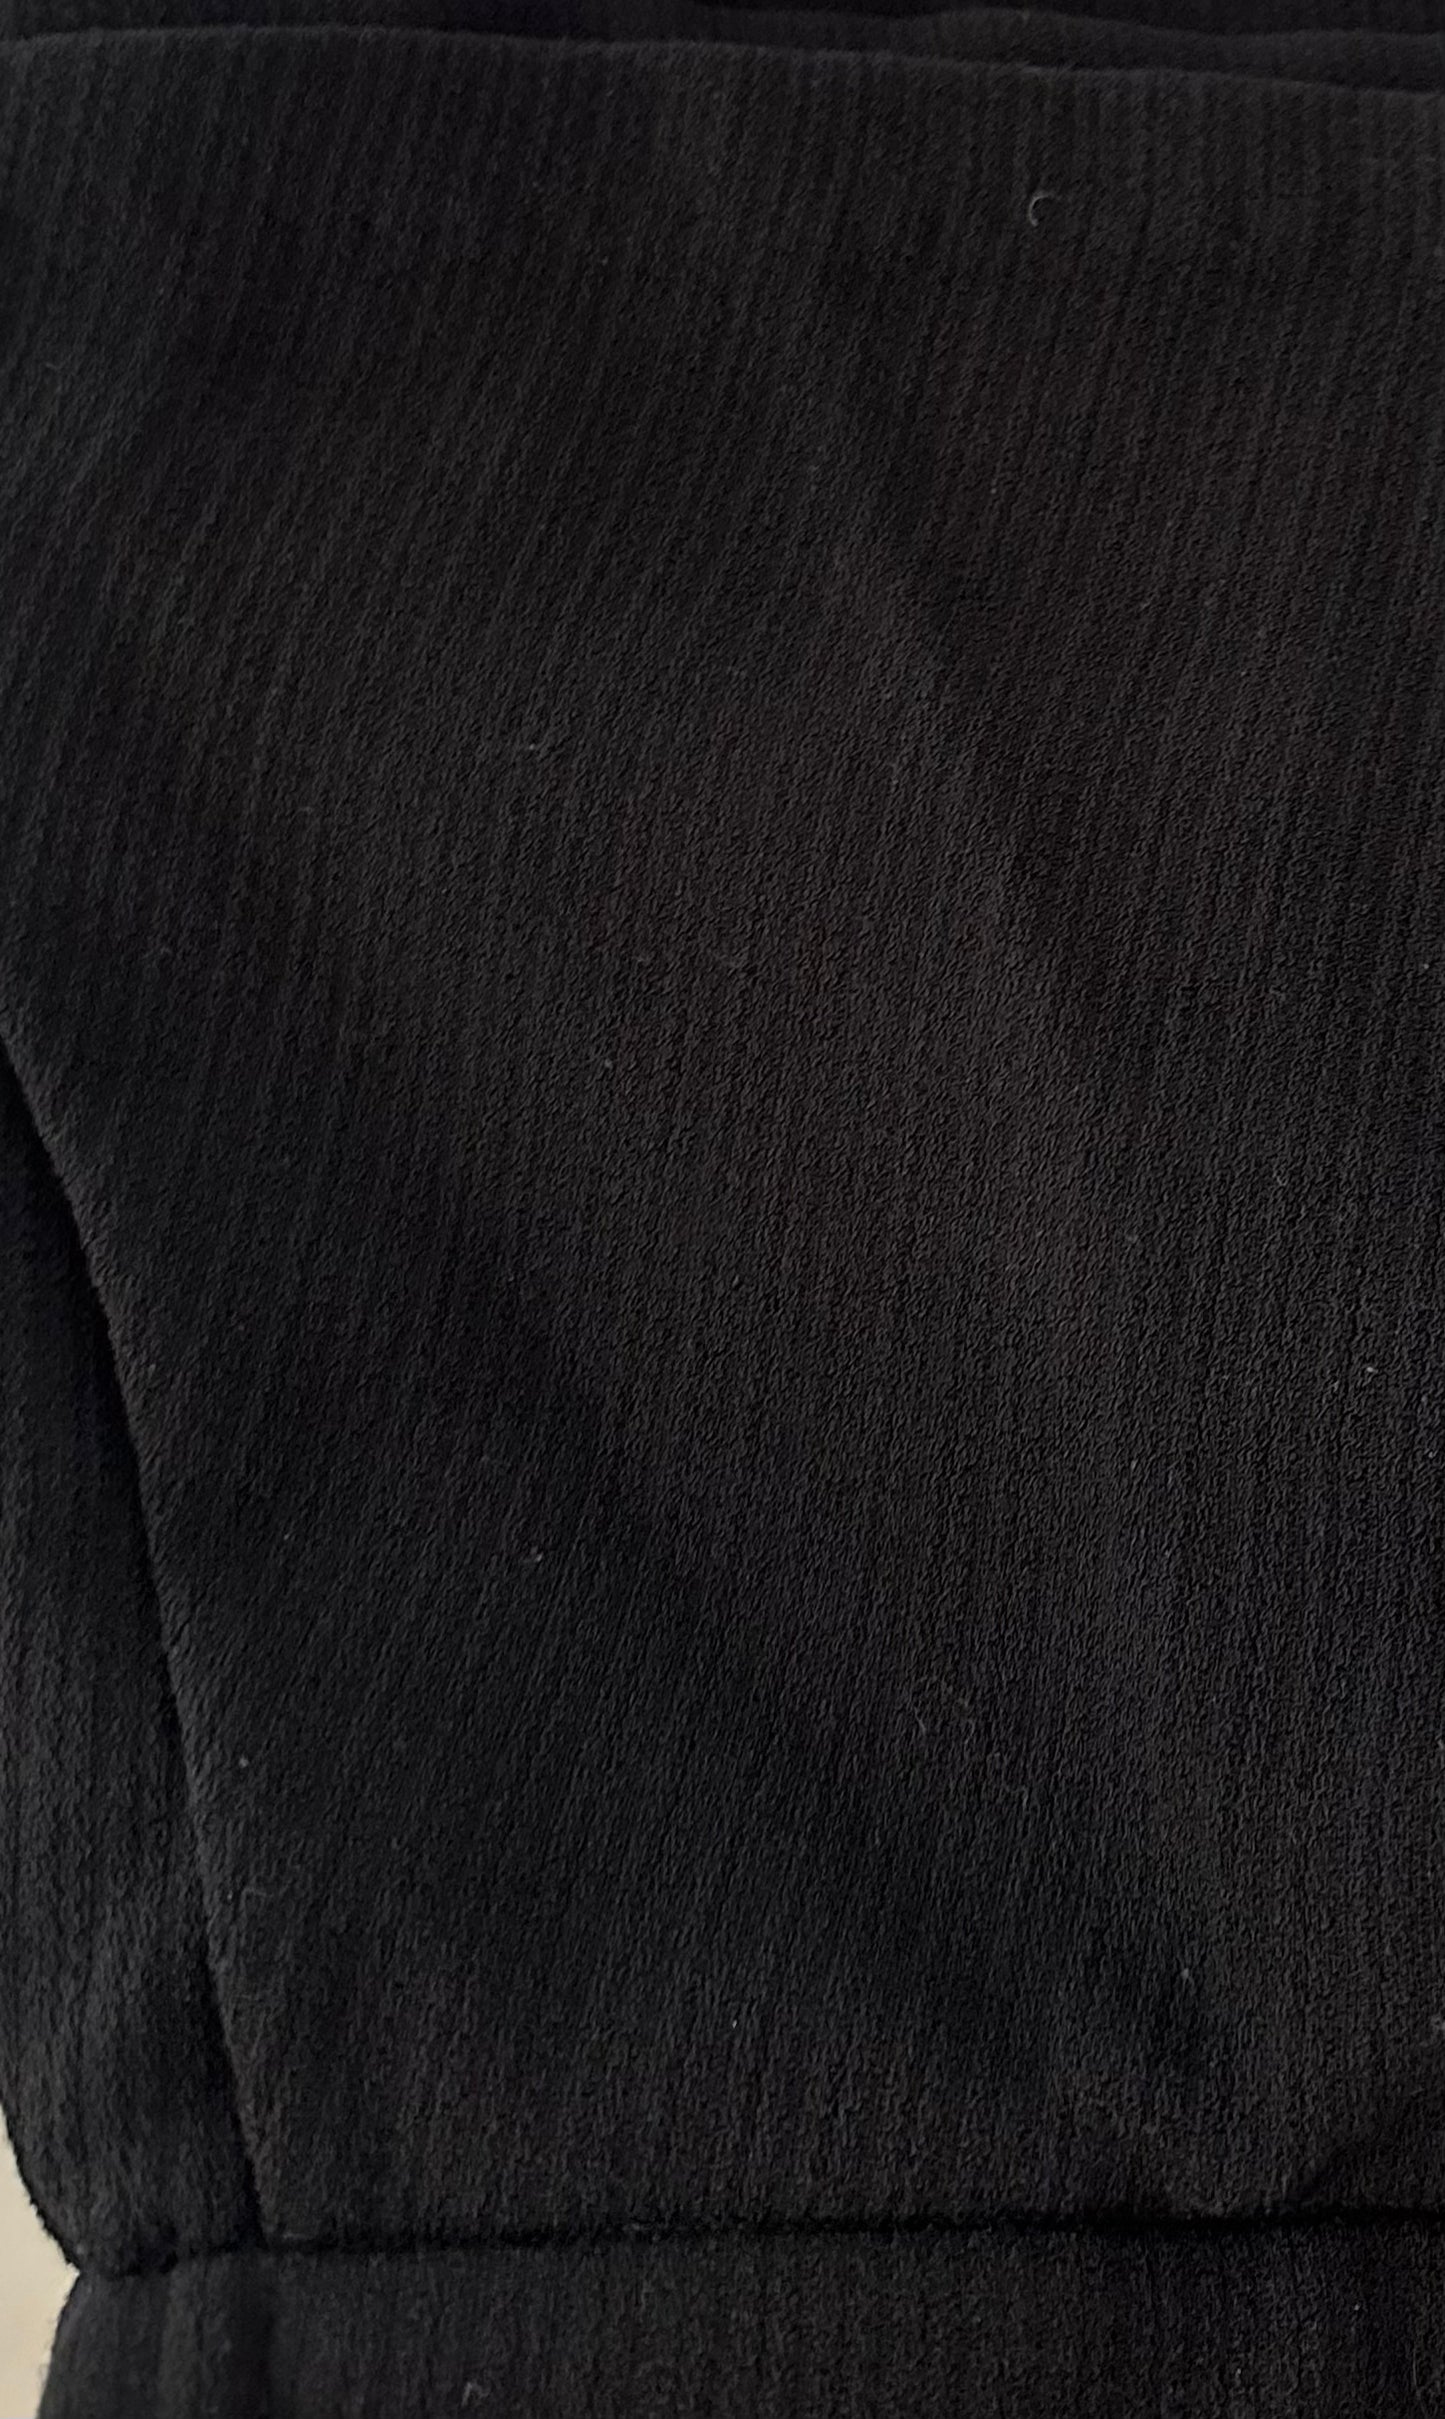 Black tweed skort